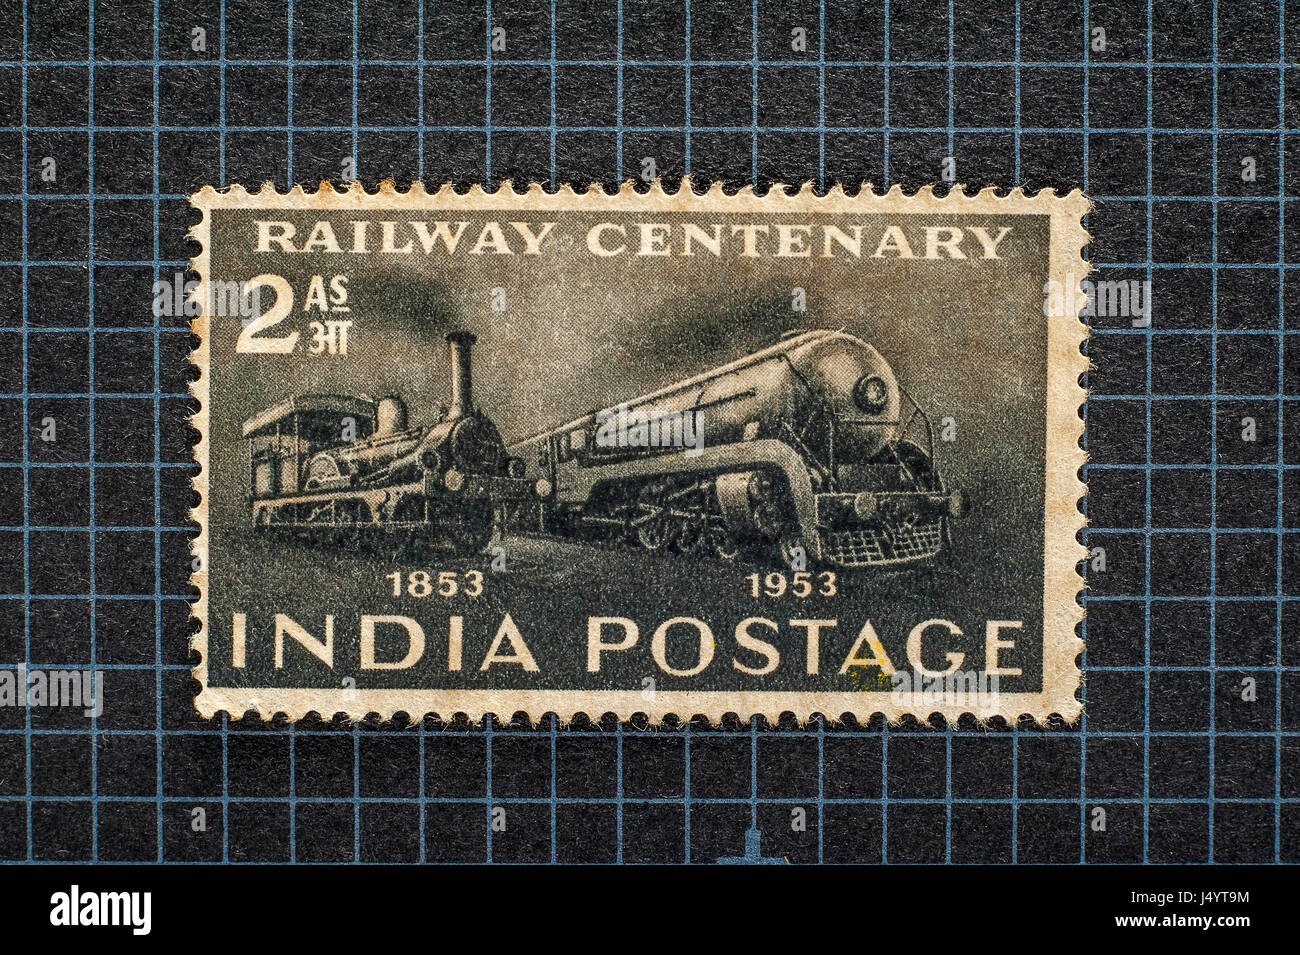 Timbre vintage 2 anna du centenaire des chemins de fer indiens, affranchissement indien, 1853 1953, Inde, Asie, vieux timbre Banque D'Images